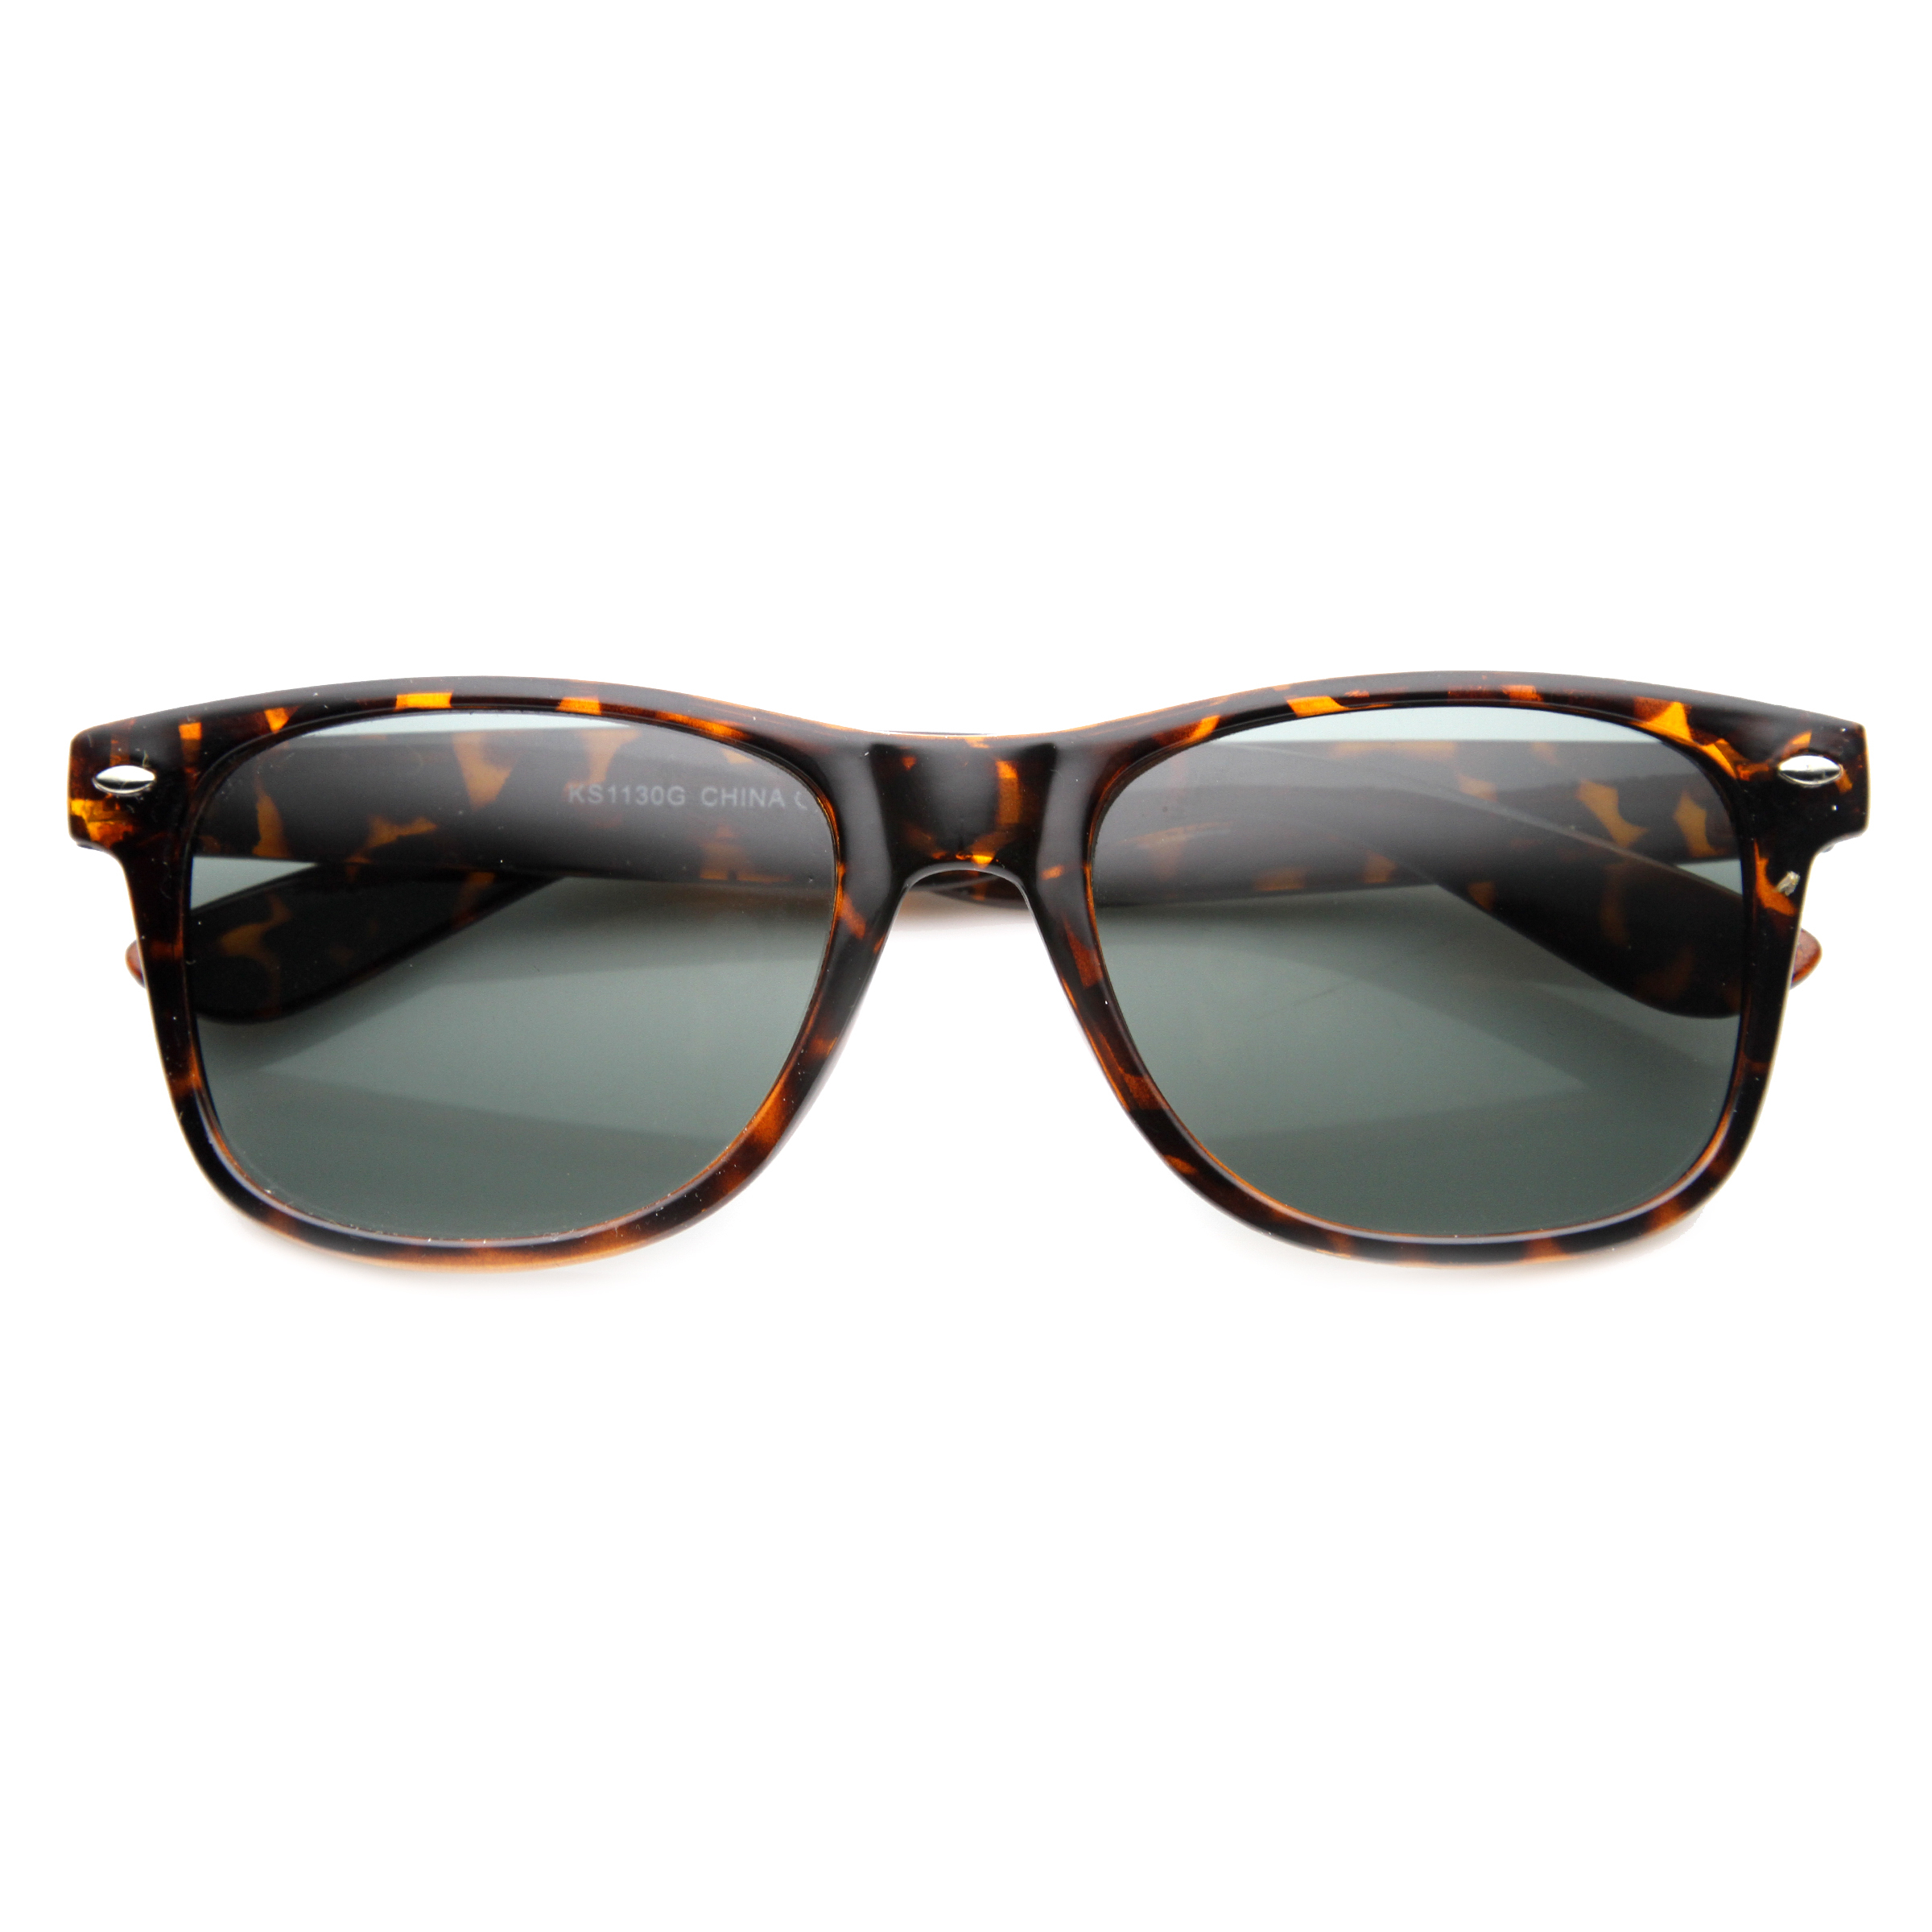 Classic 80s Retro Large Classic Horned Rim Style Sunglasses Eyewear - 8452 - Tortoise / Polarized Lens